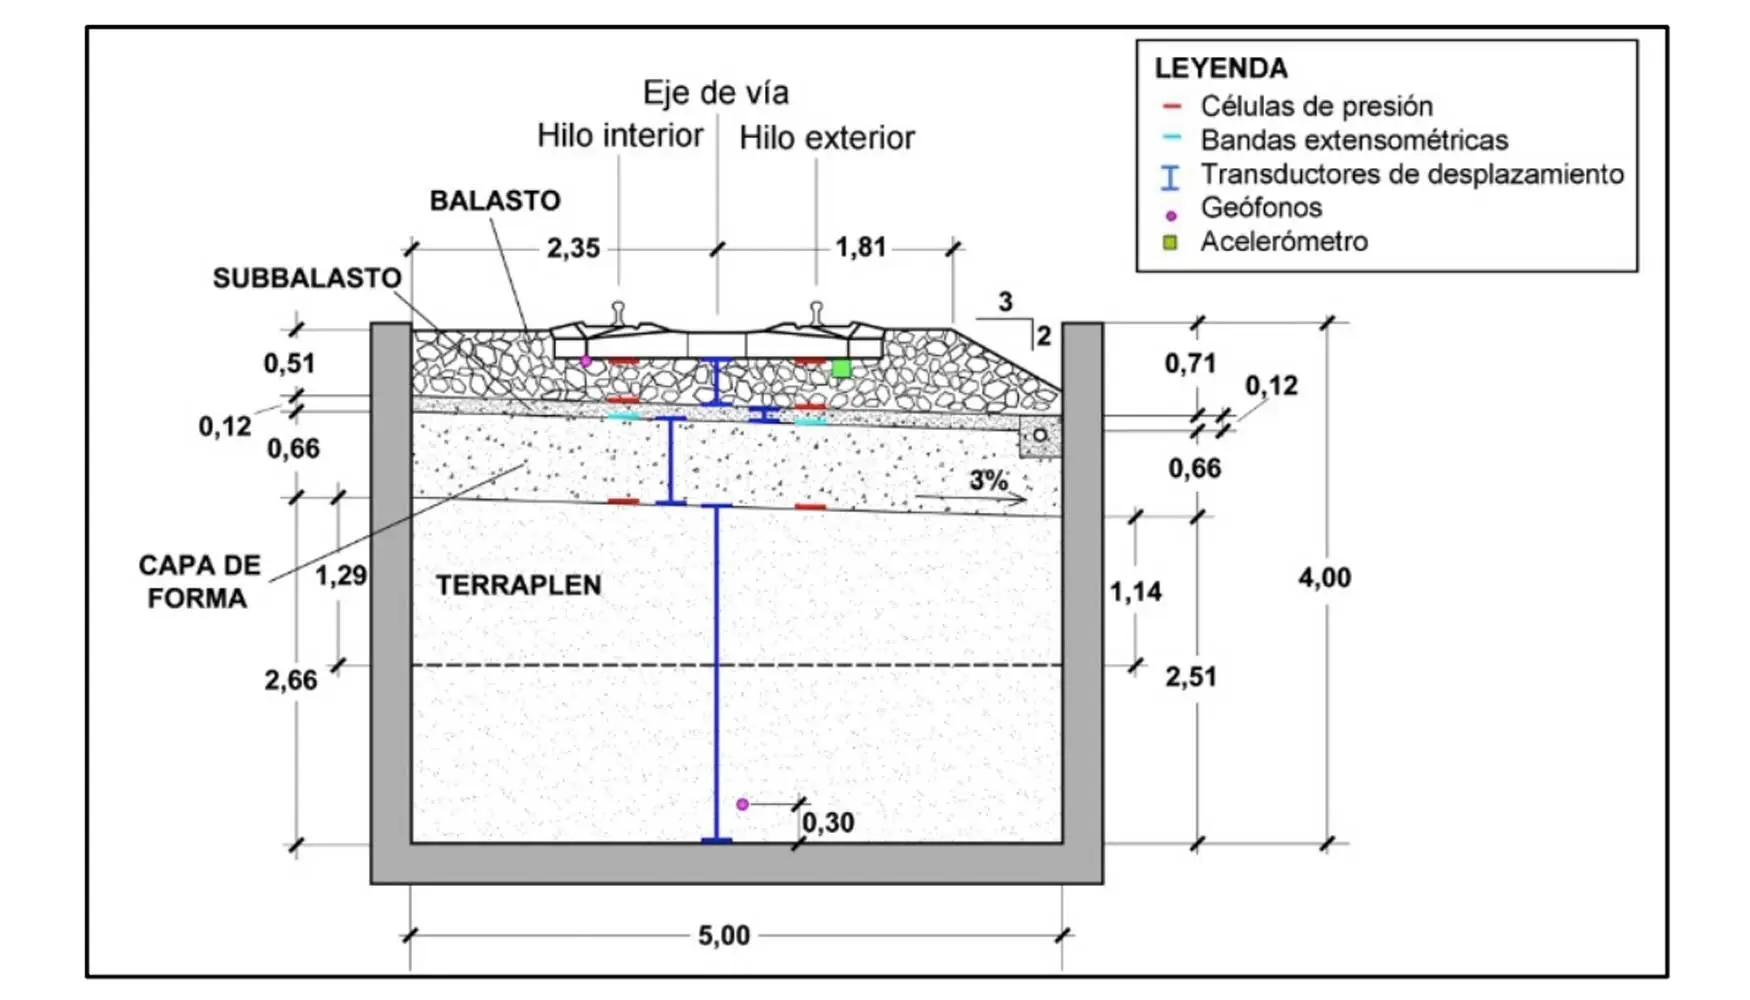 espesores geotextil bajo balasto para uso ferroviario - Cuánto mide un geotextil